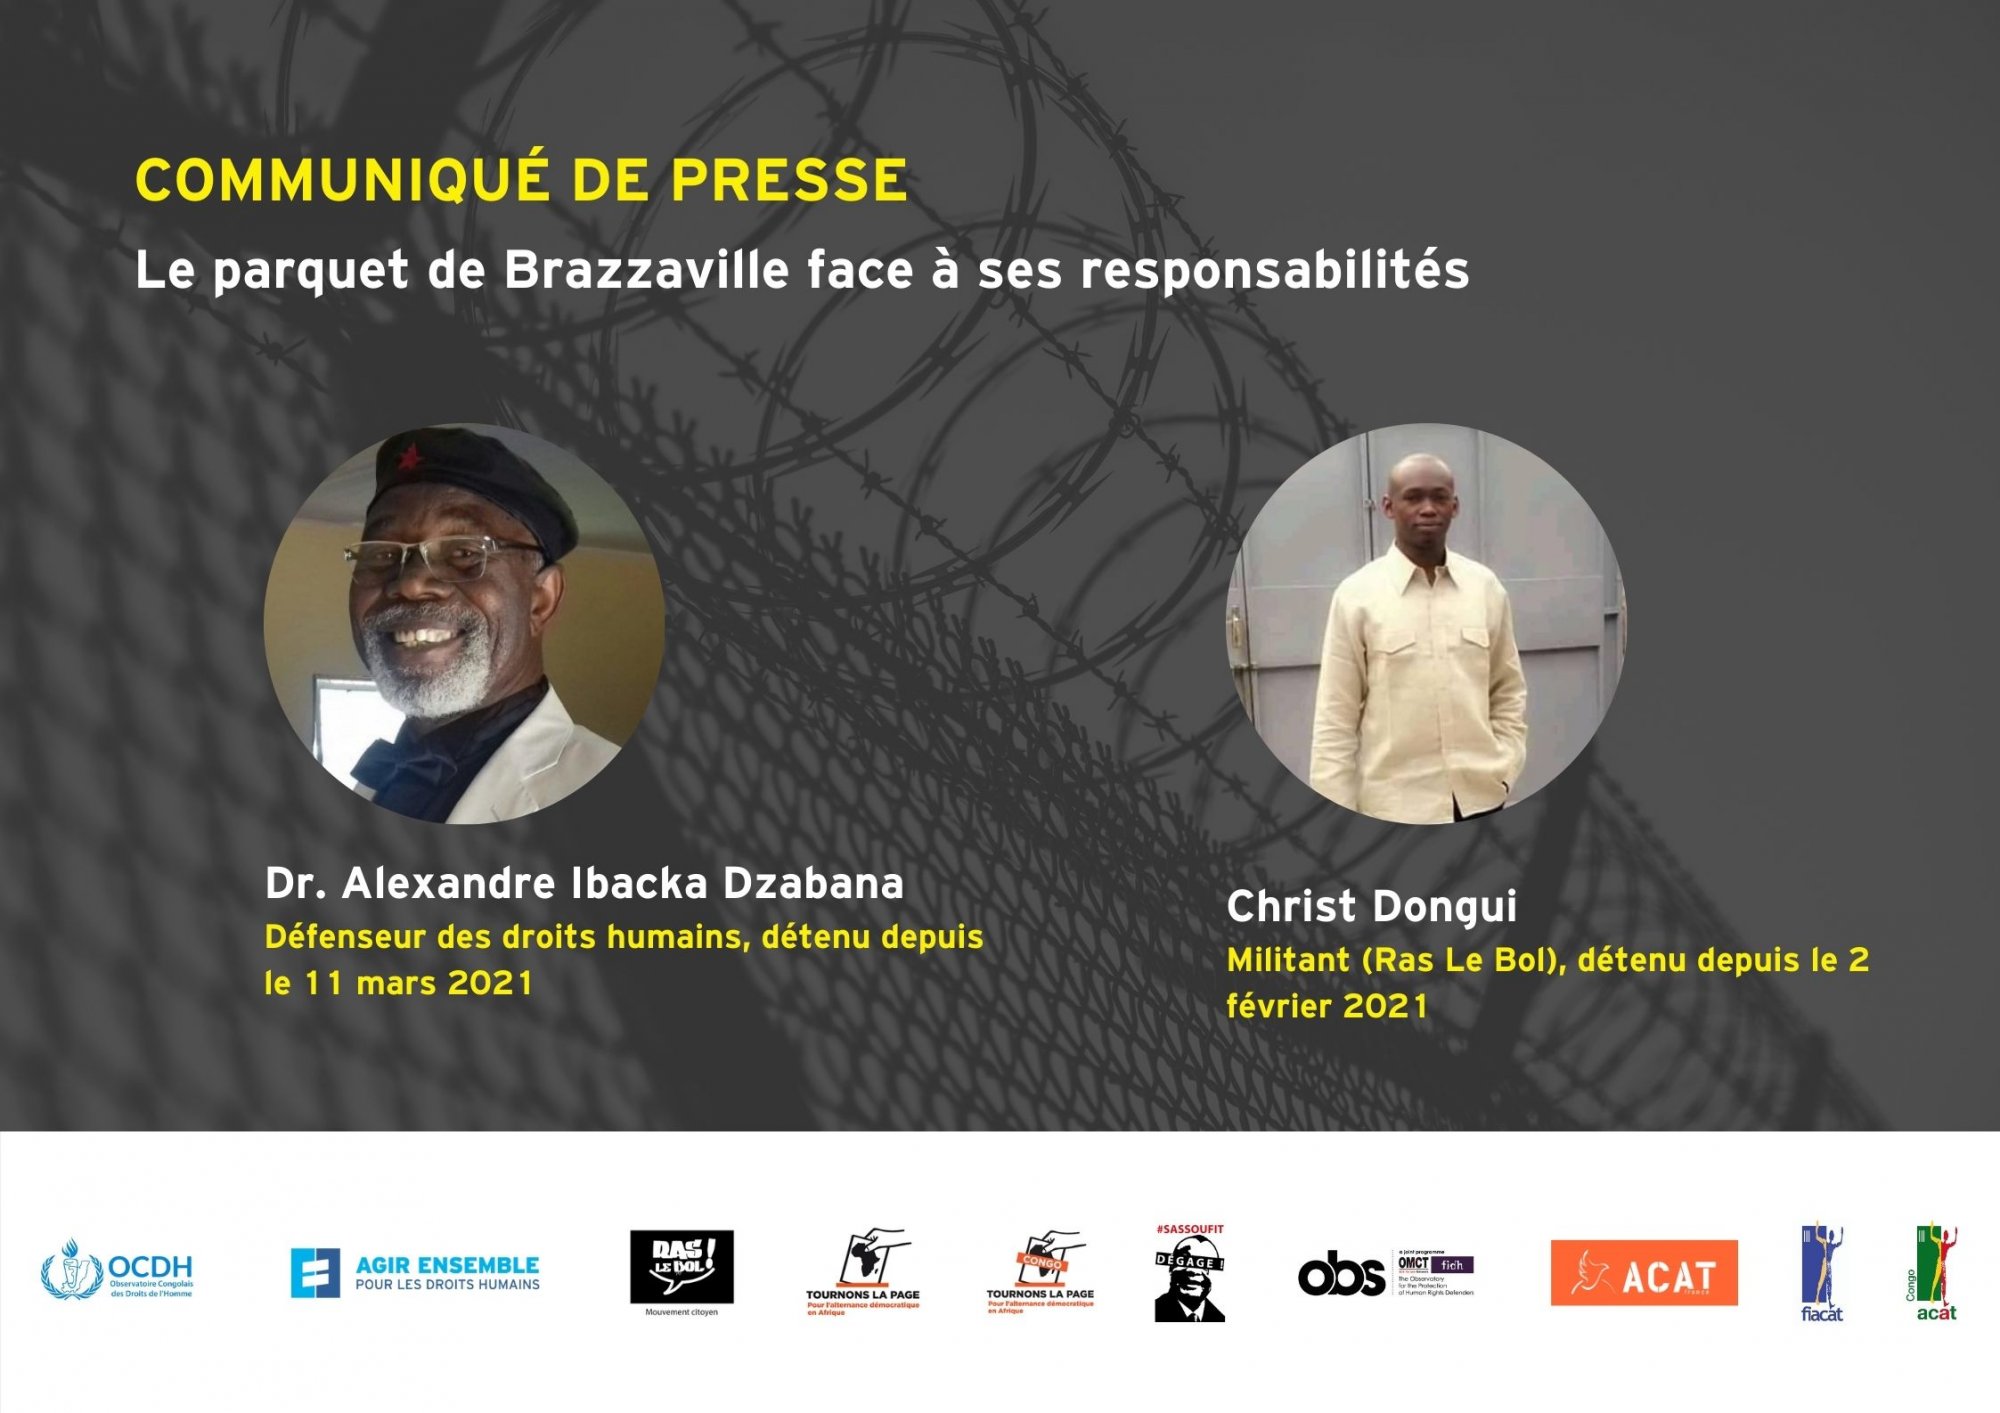 COMMUNIQUE – Le parquet de Brazzaville face à ses responsabilités